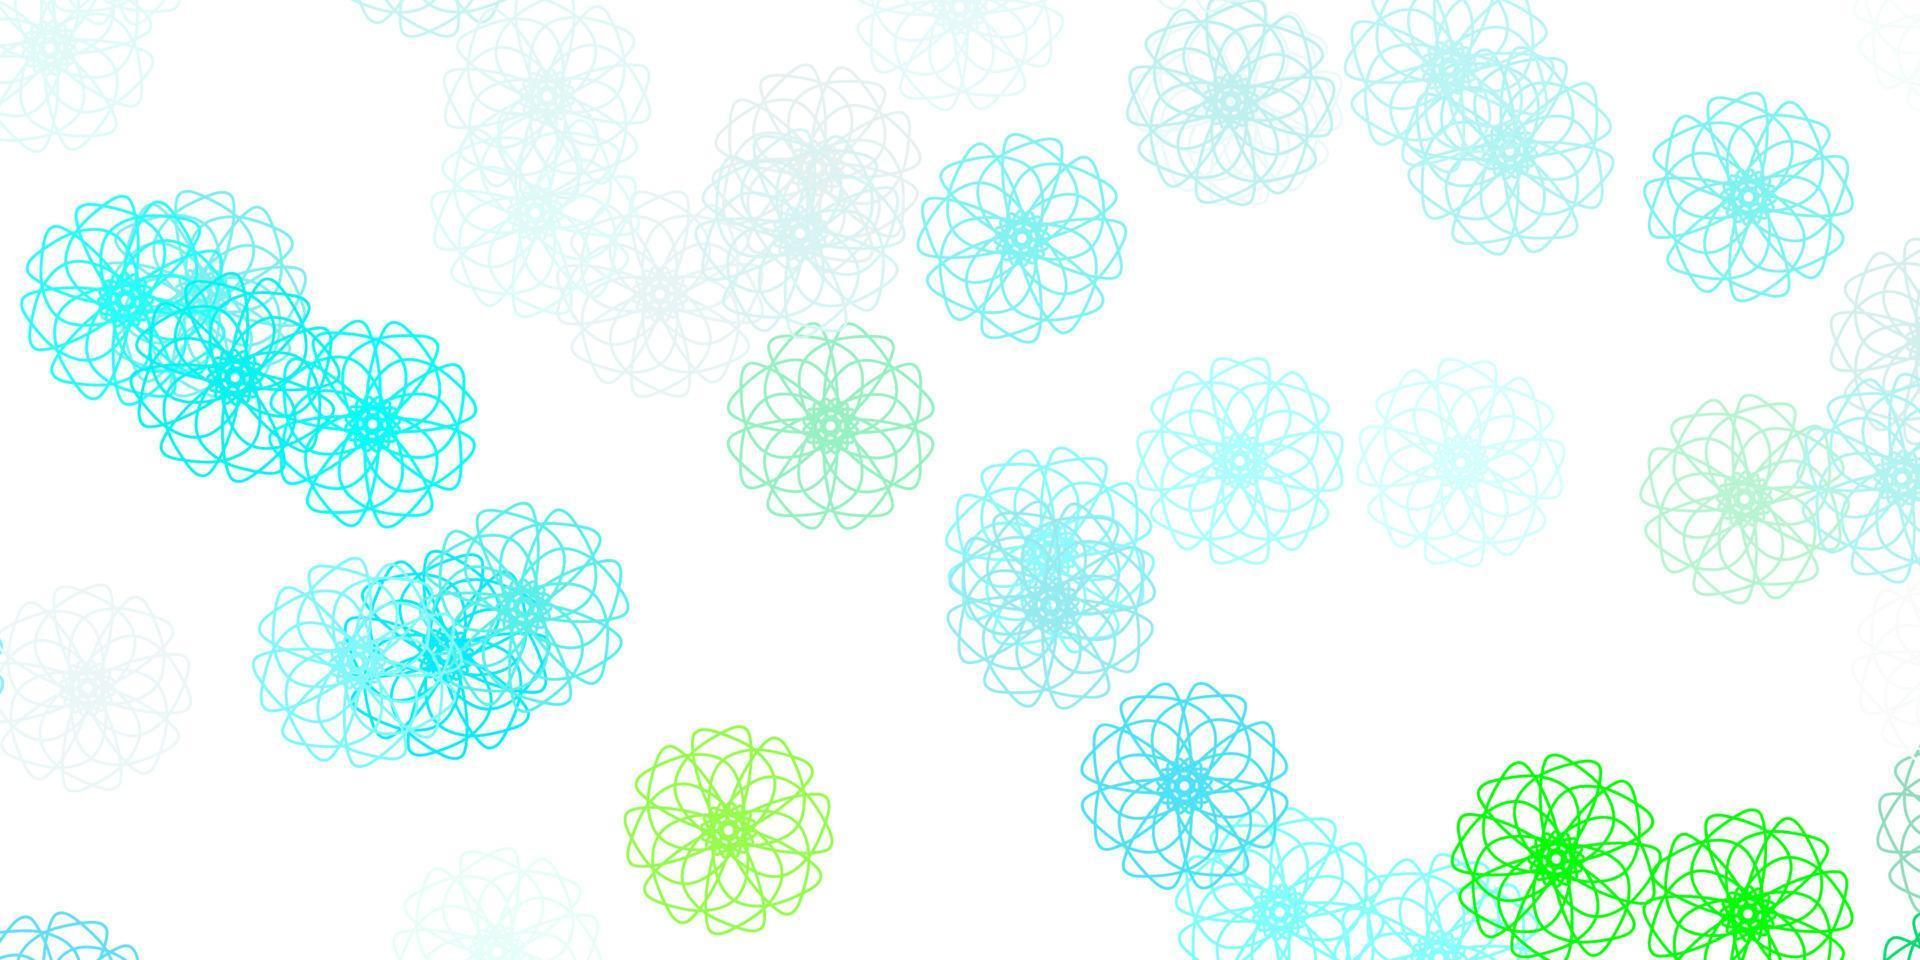 padrão de doodle de vetor azul e verde claro com flores.